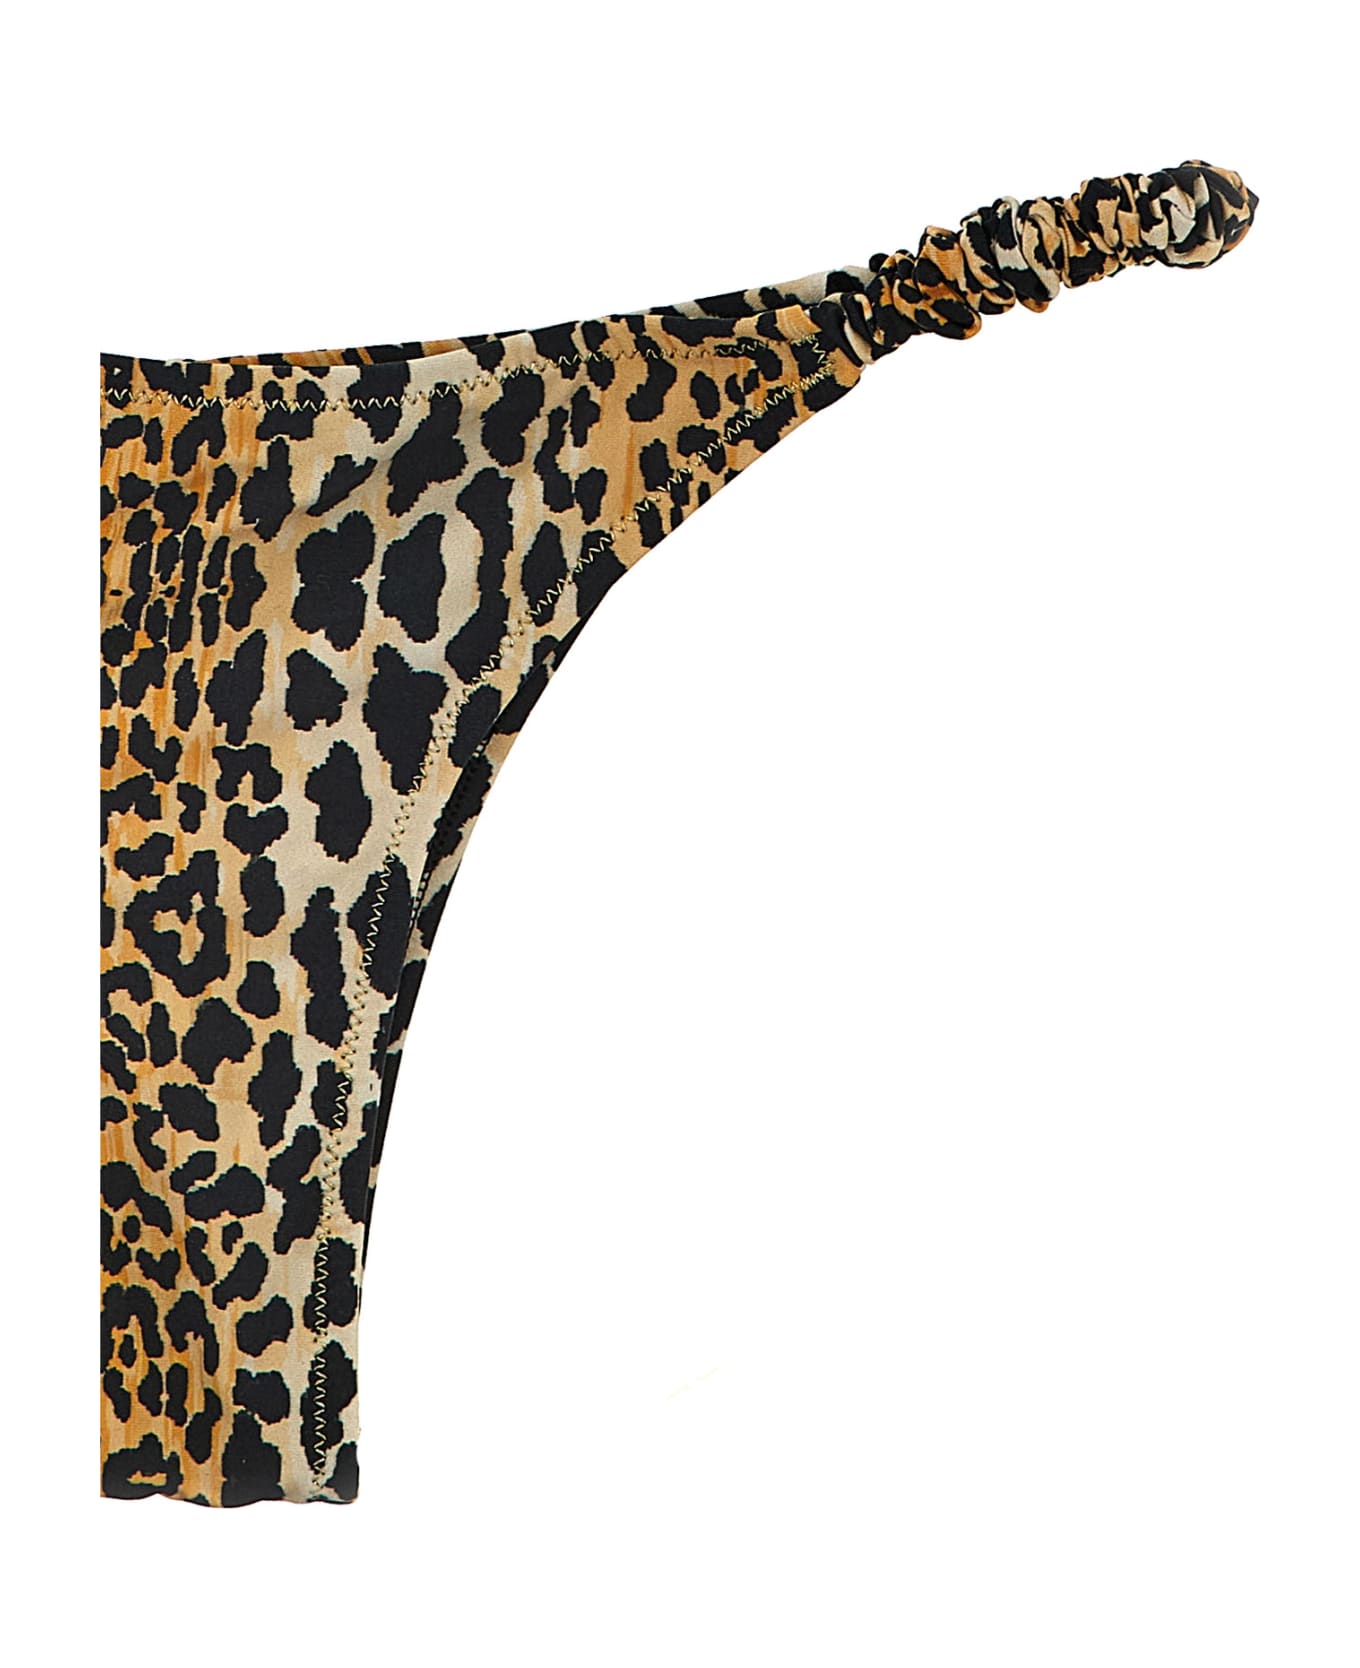 Reina Olga 'scrunchie Set' Bikini - Leopardo 水着